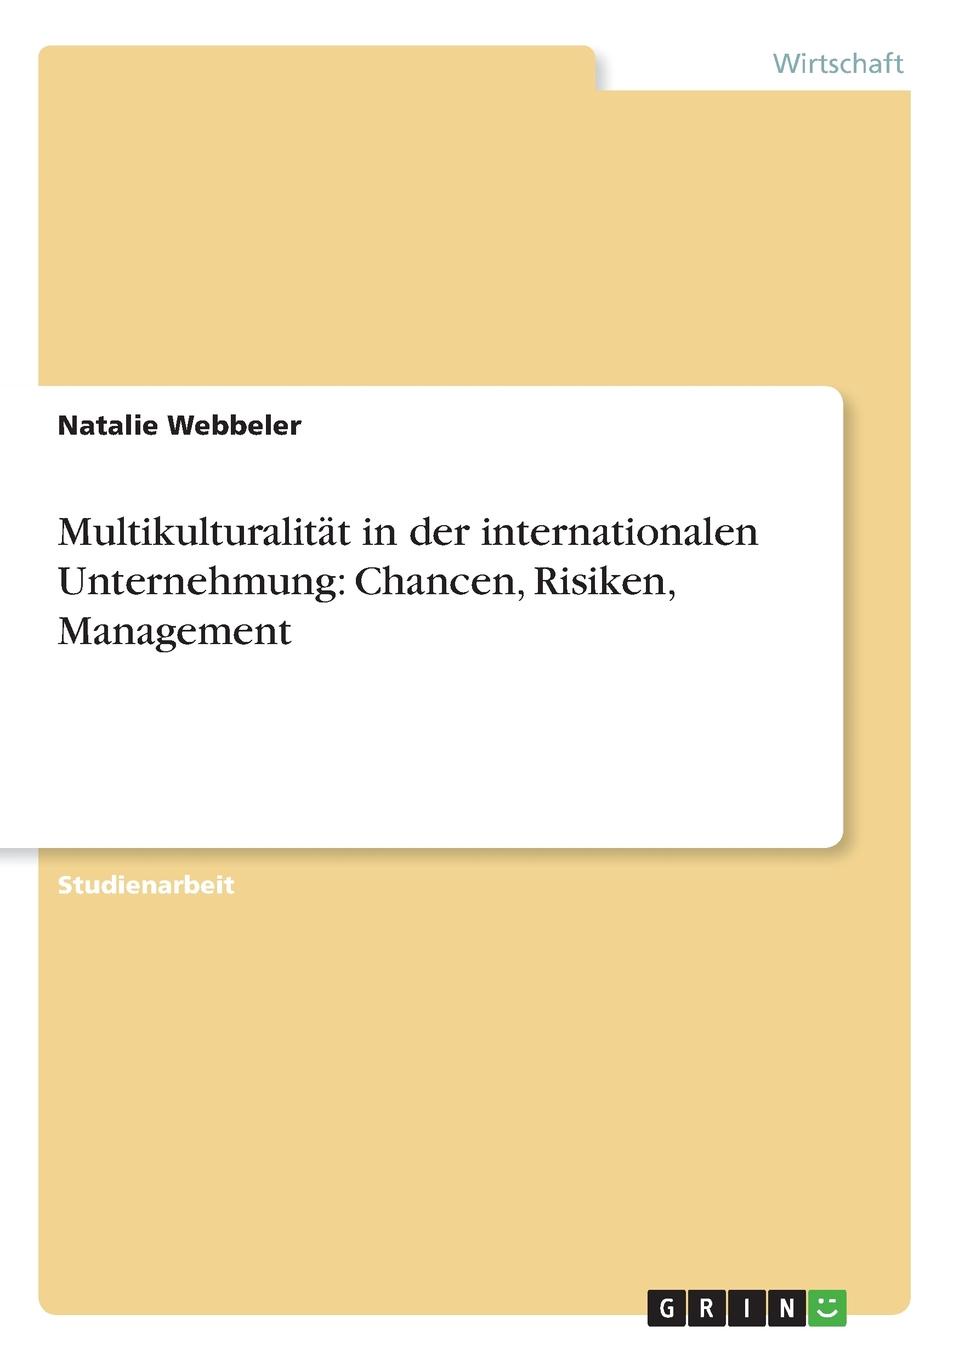 Multikulturalitat in der internationalen Unternehmung. Chancen, Risiken, Management